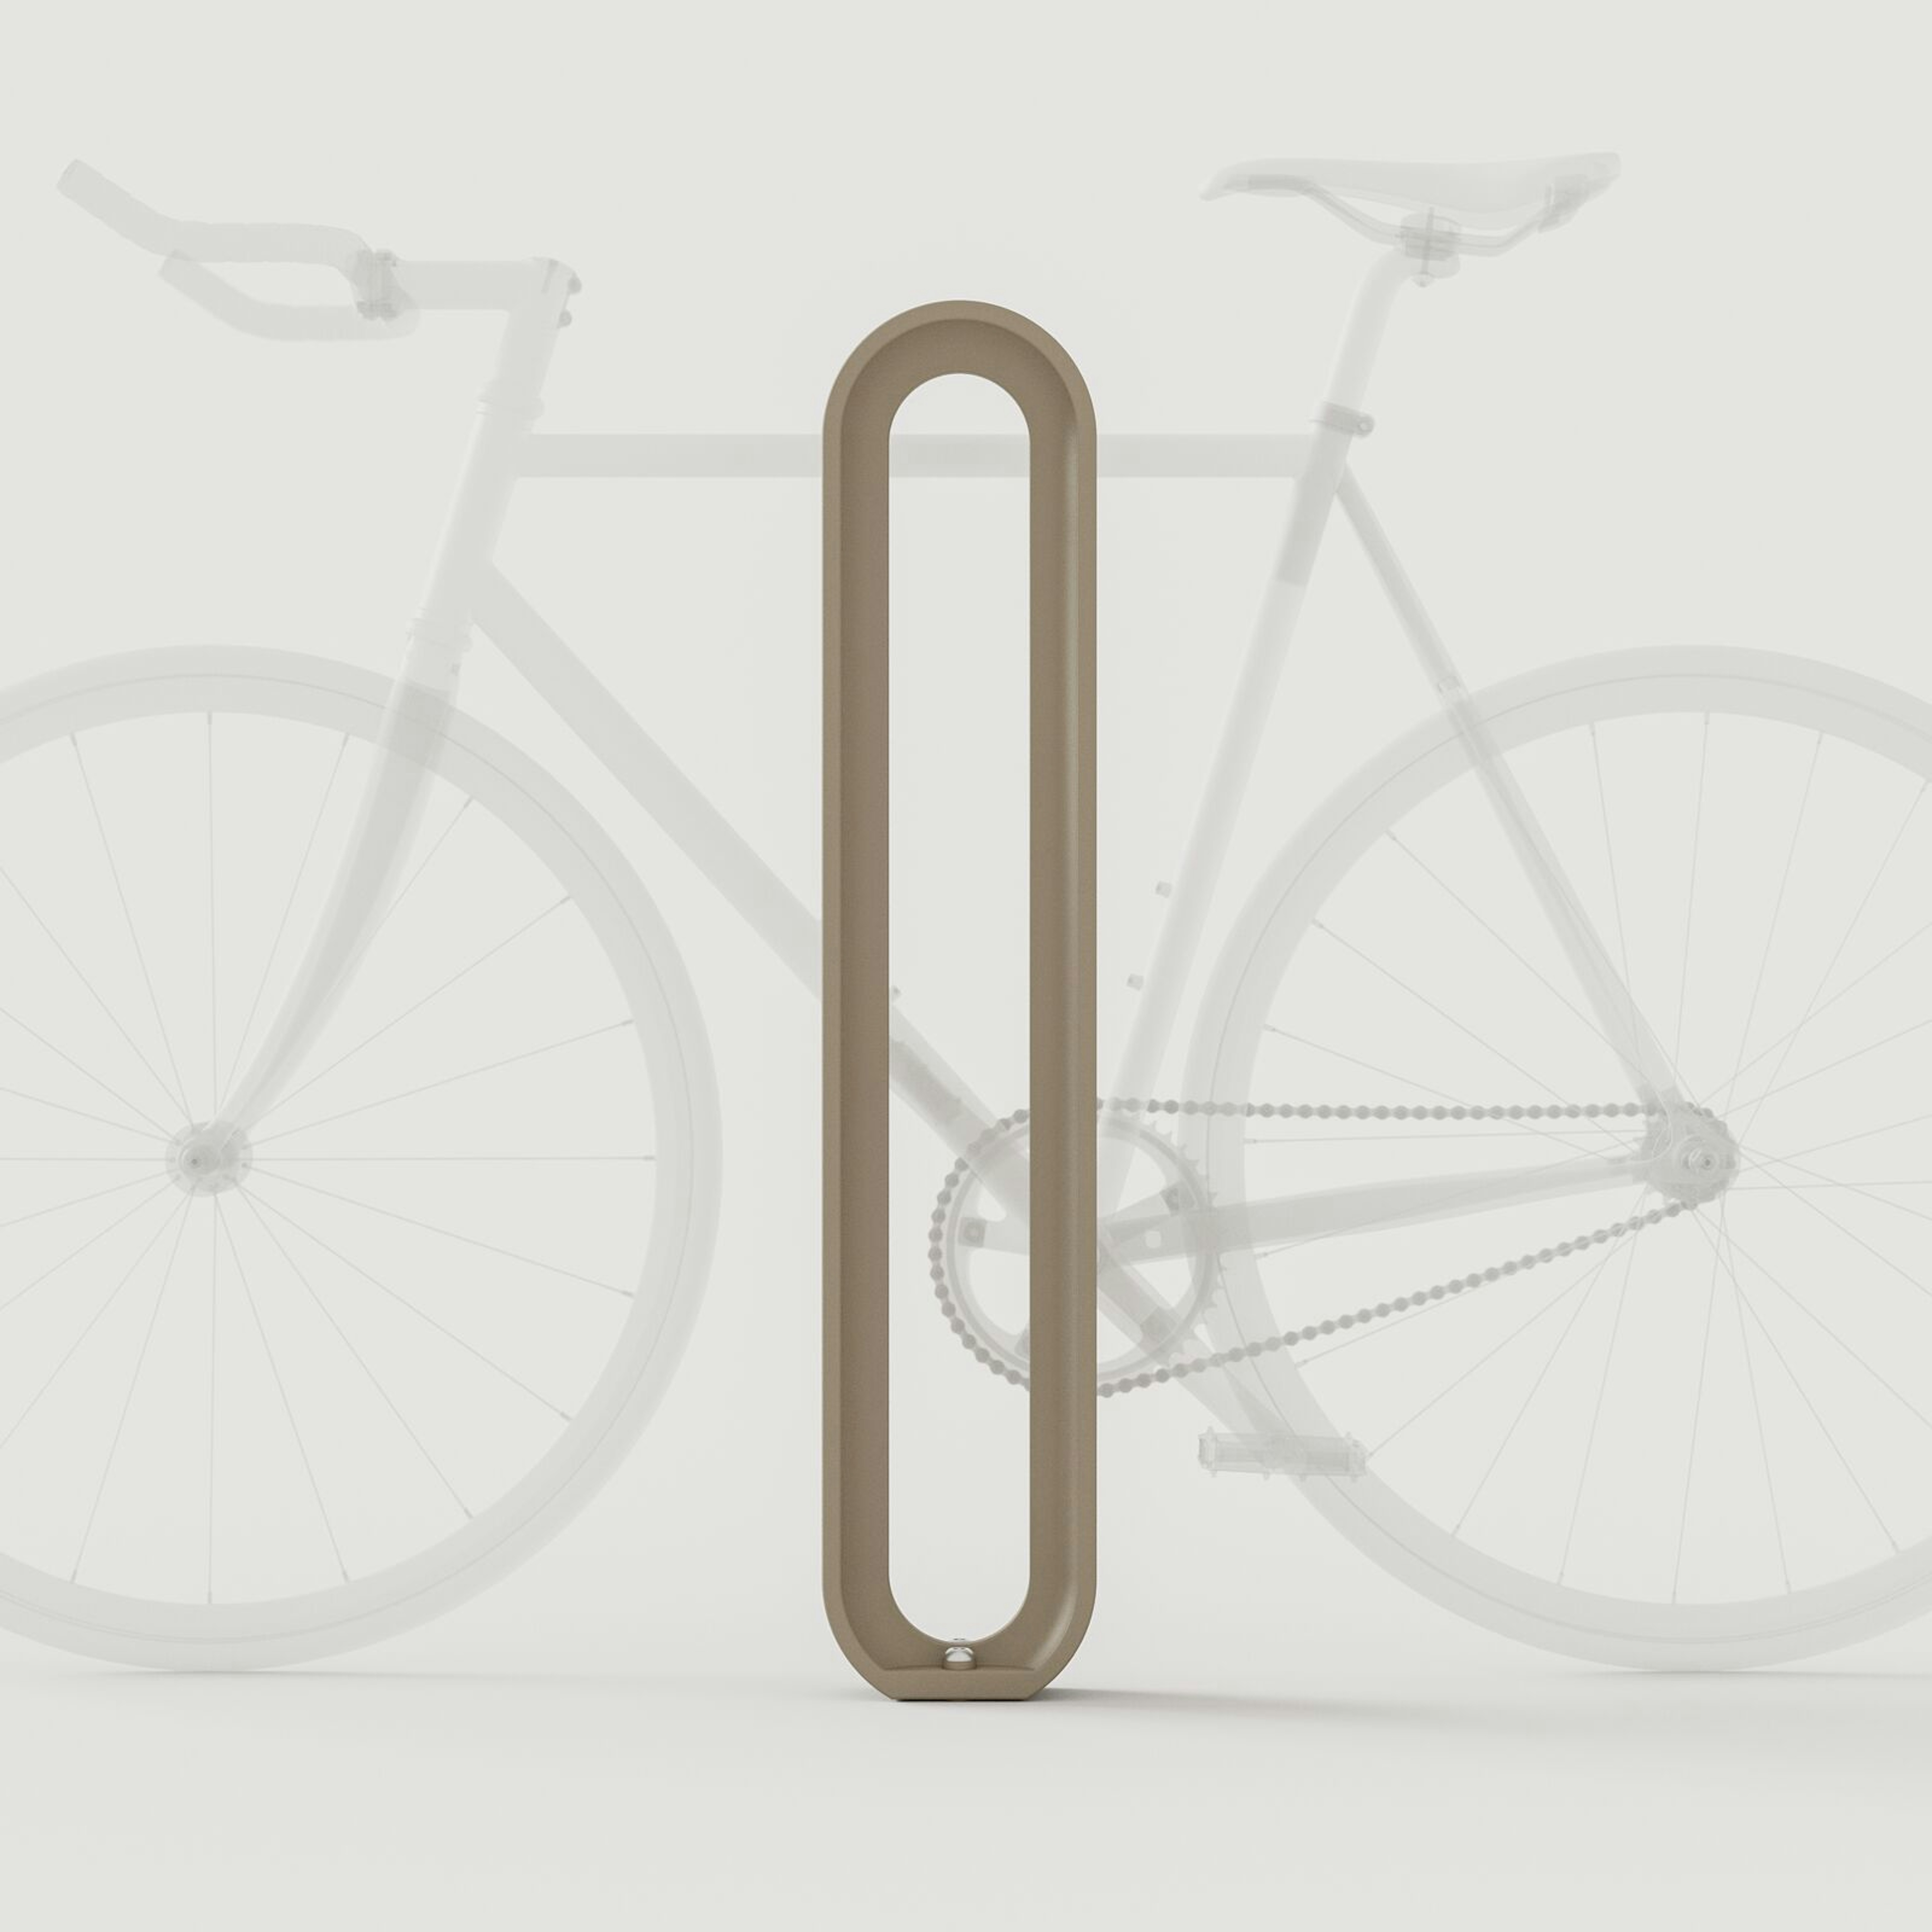 Olympia Bike Rack: Mushroom Texture